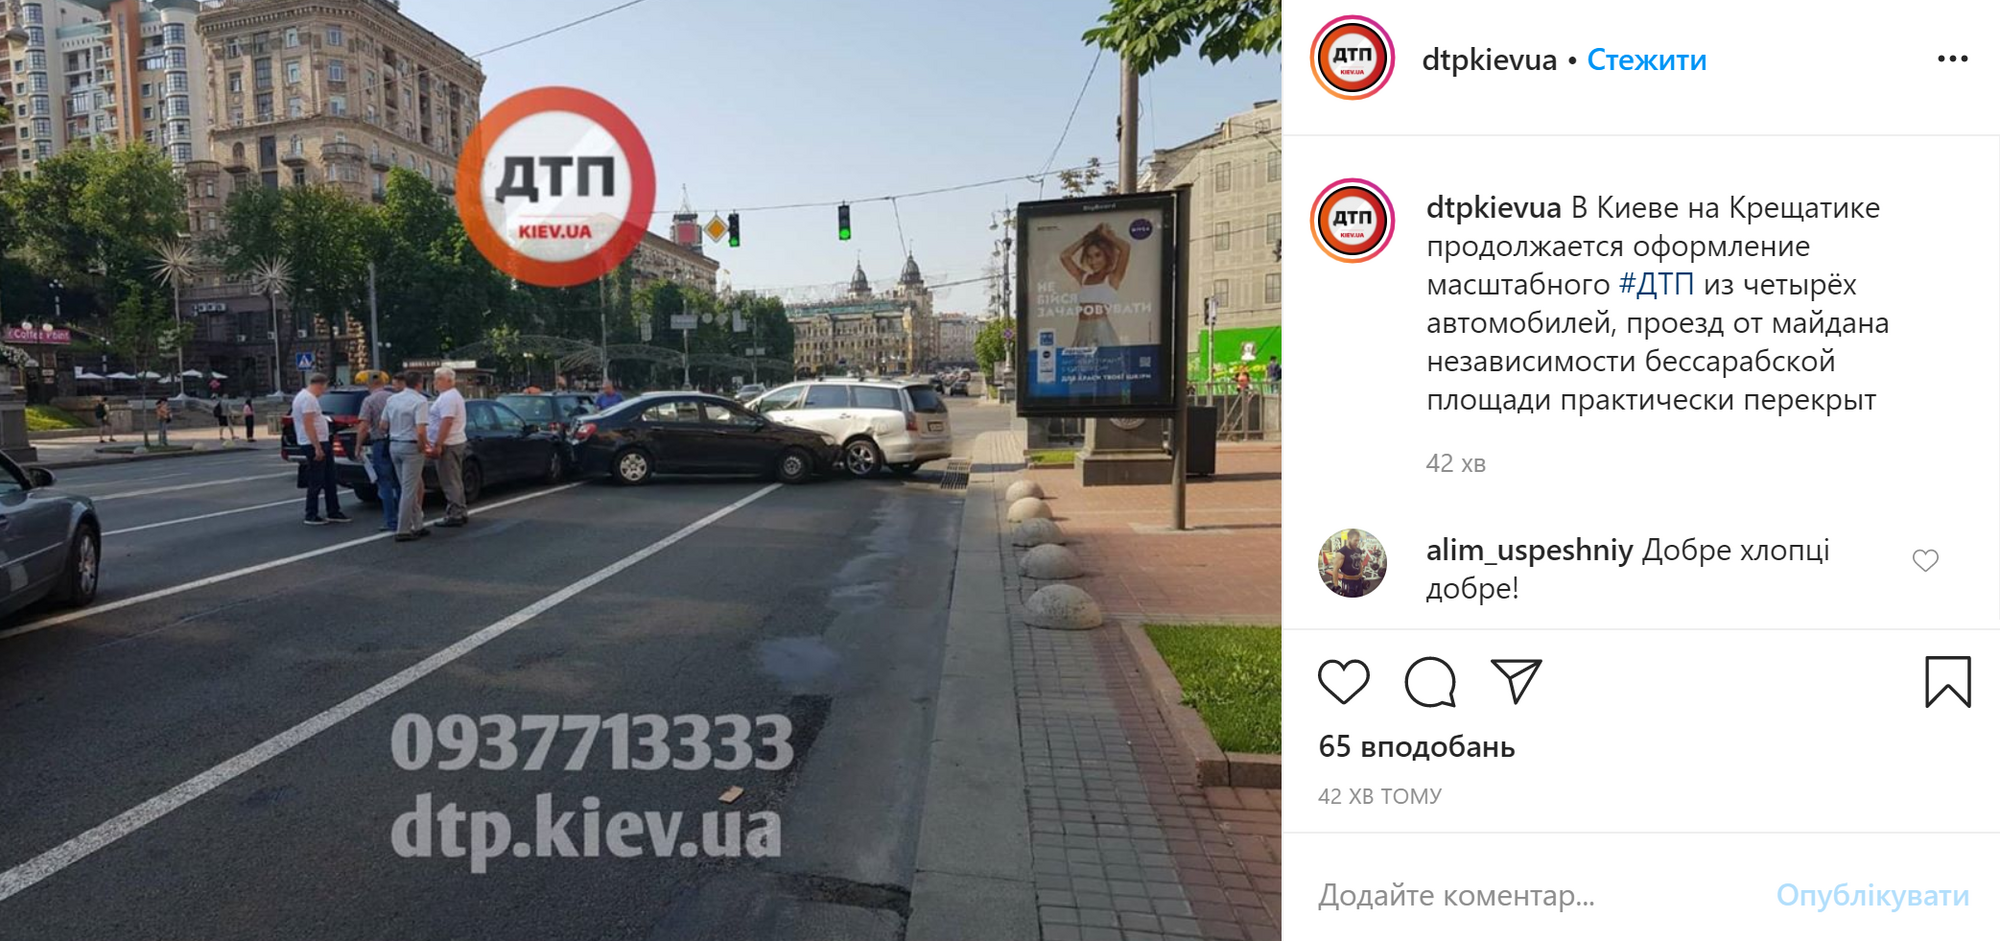 Пост о ДТП в центре Киева